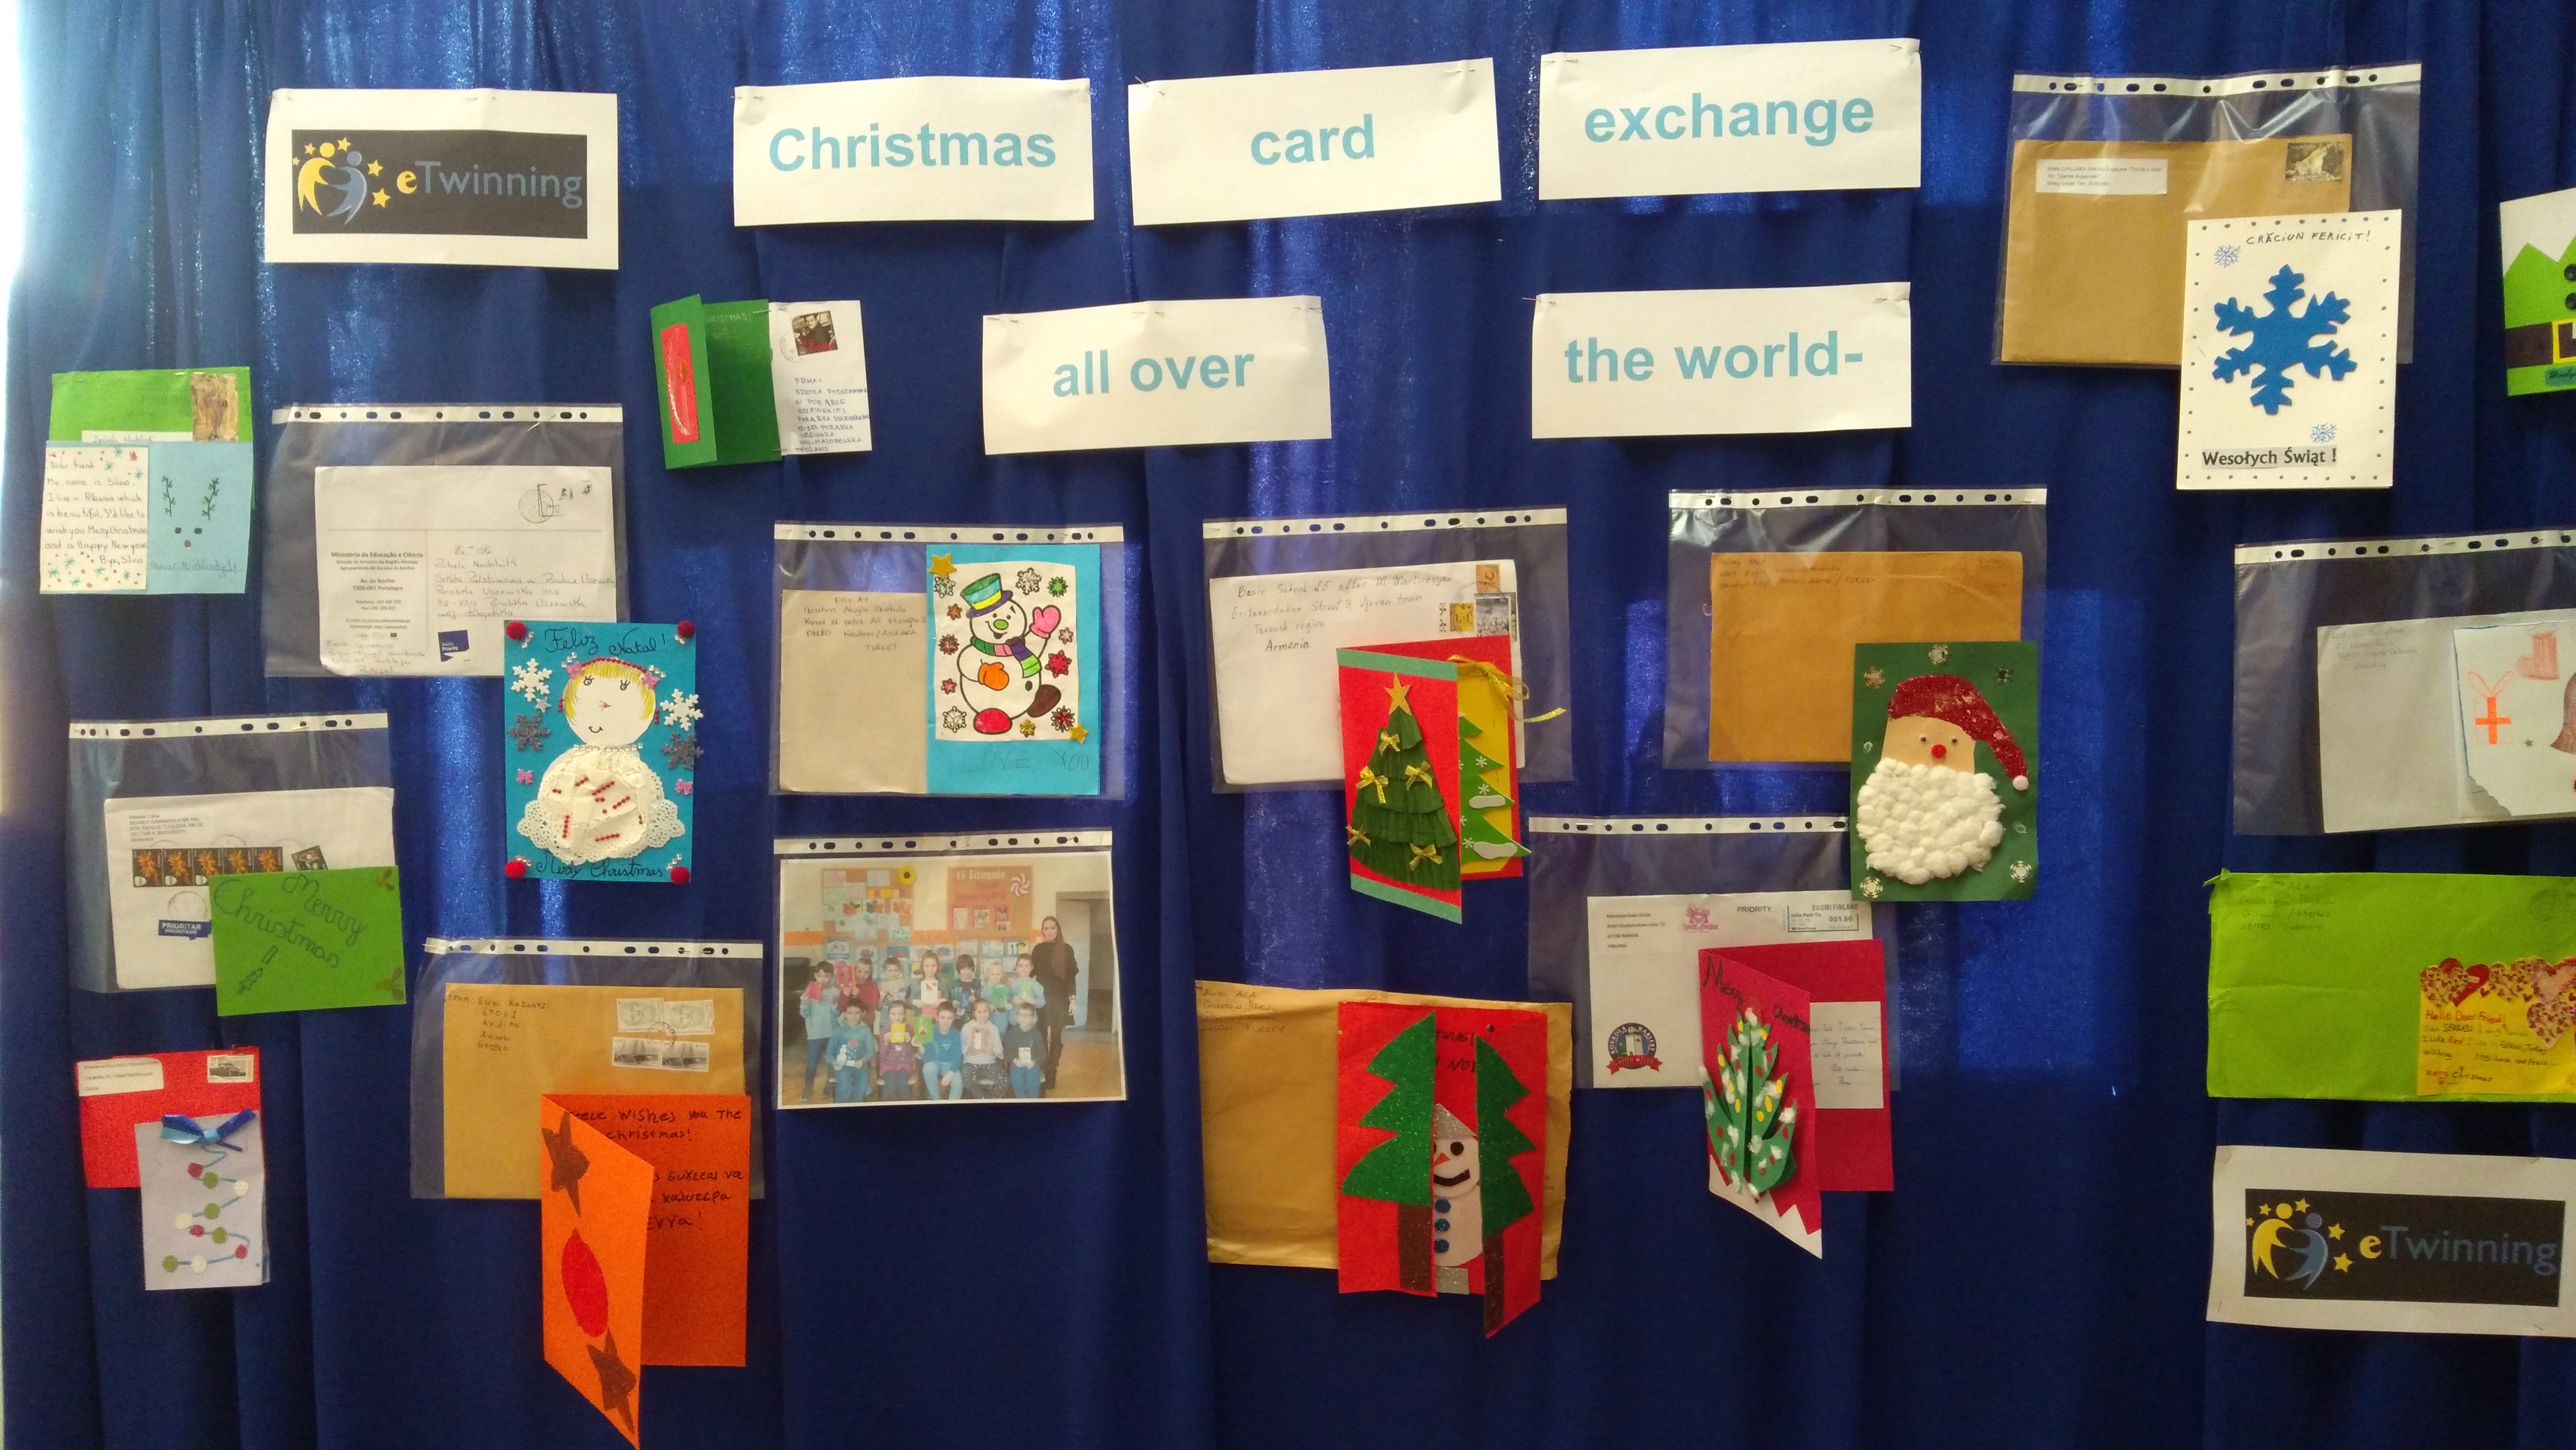 Międzynarodowa współpraca w ramach  projektu „Christmas all over the world – card exchange” –podsumowanie.